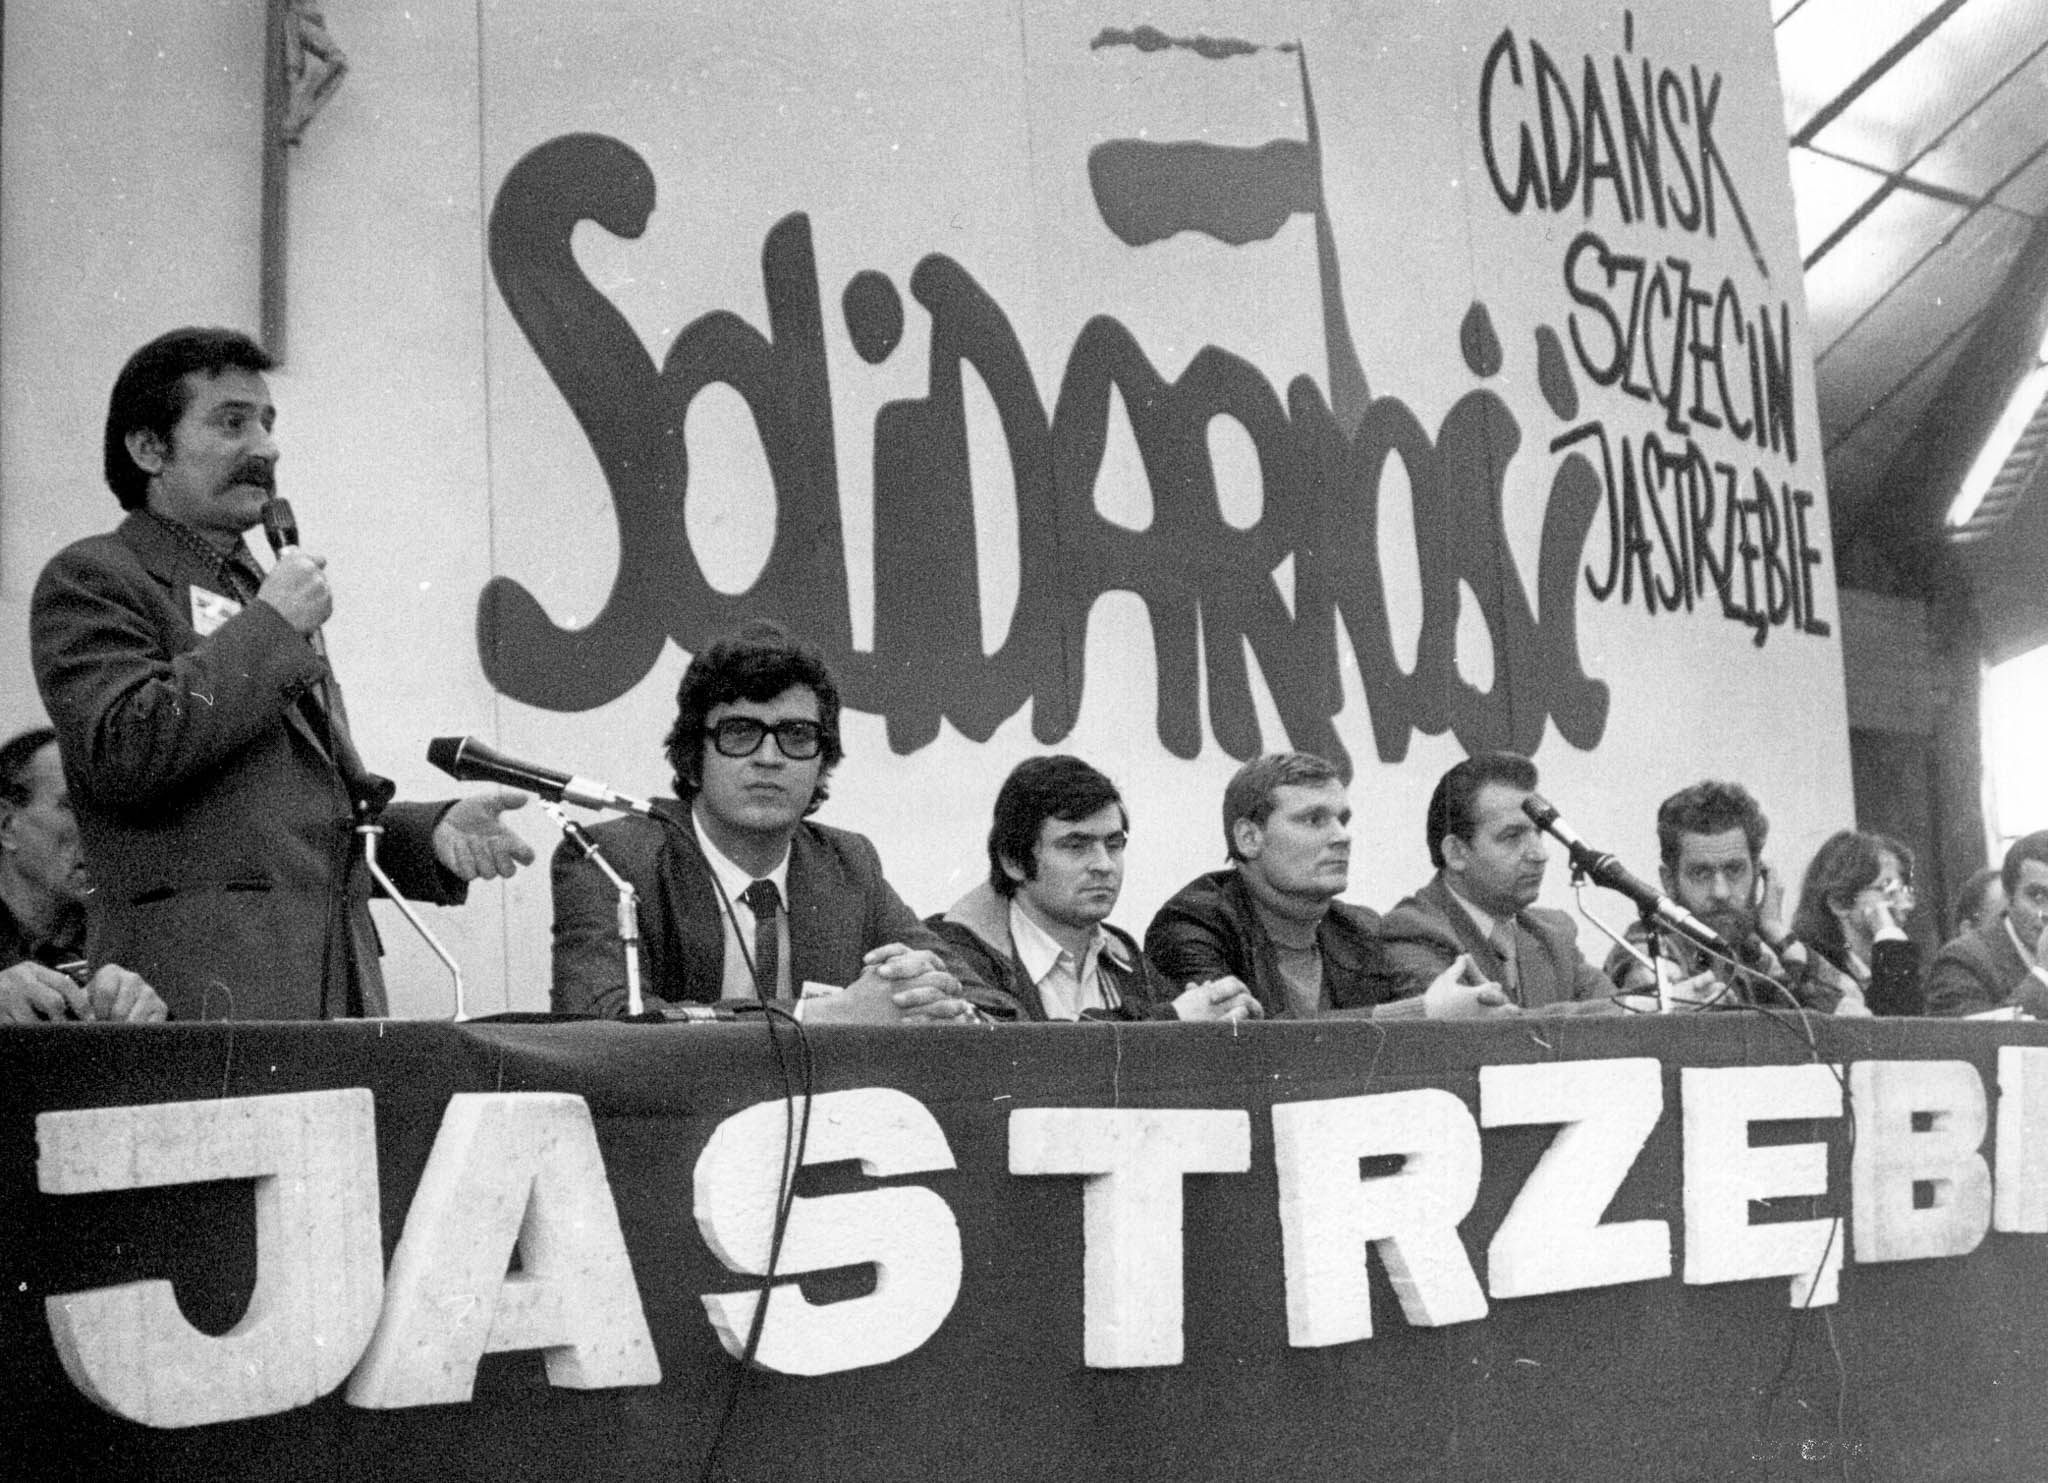 Jastrzębie, 20 października 1980, pierwsze spotkanie Lecha Wałęsy z górnikami